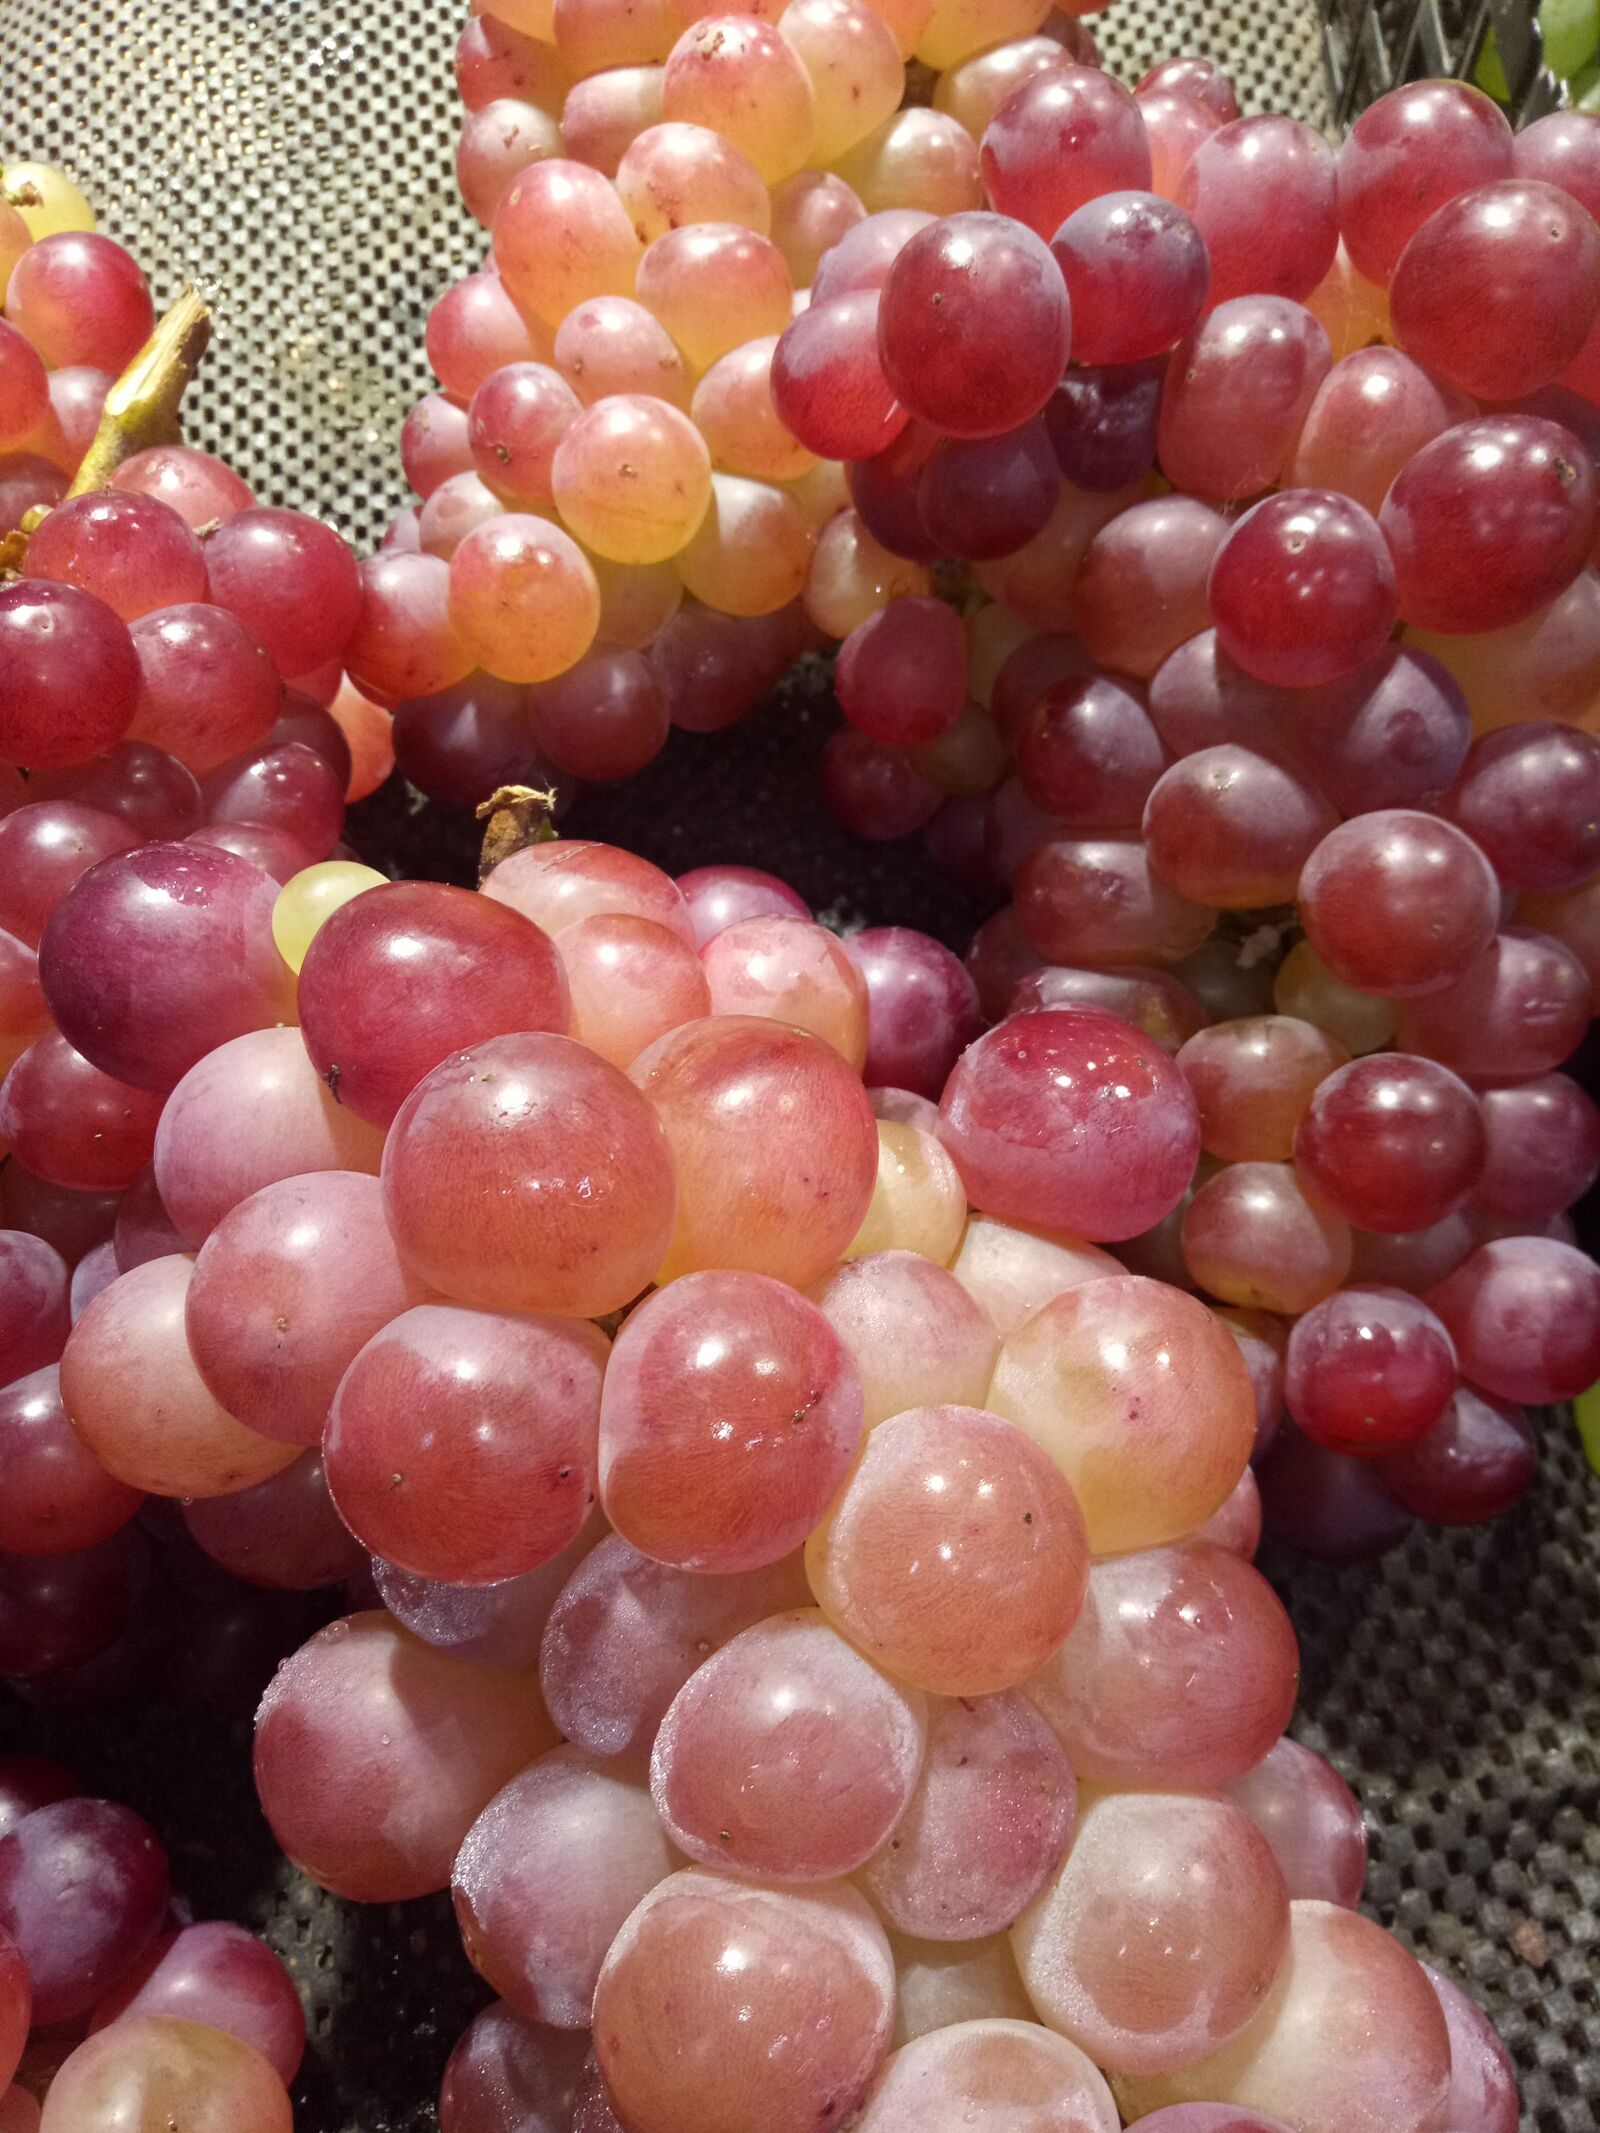 OPPO R9k sample photo. Grape, fruit, summer photography